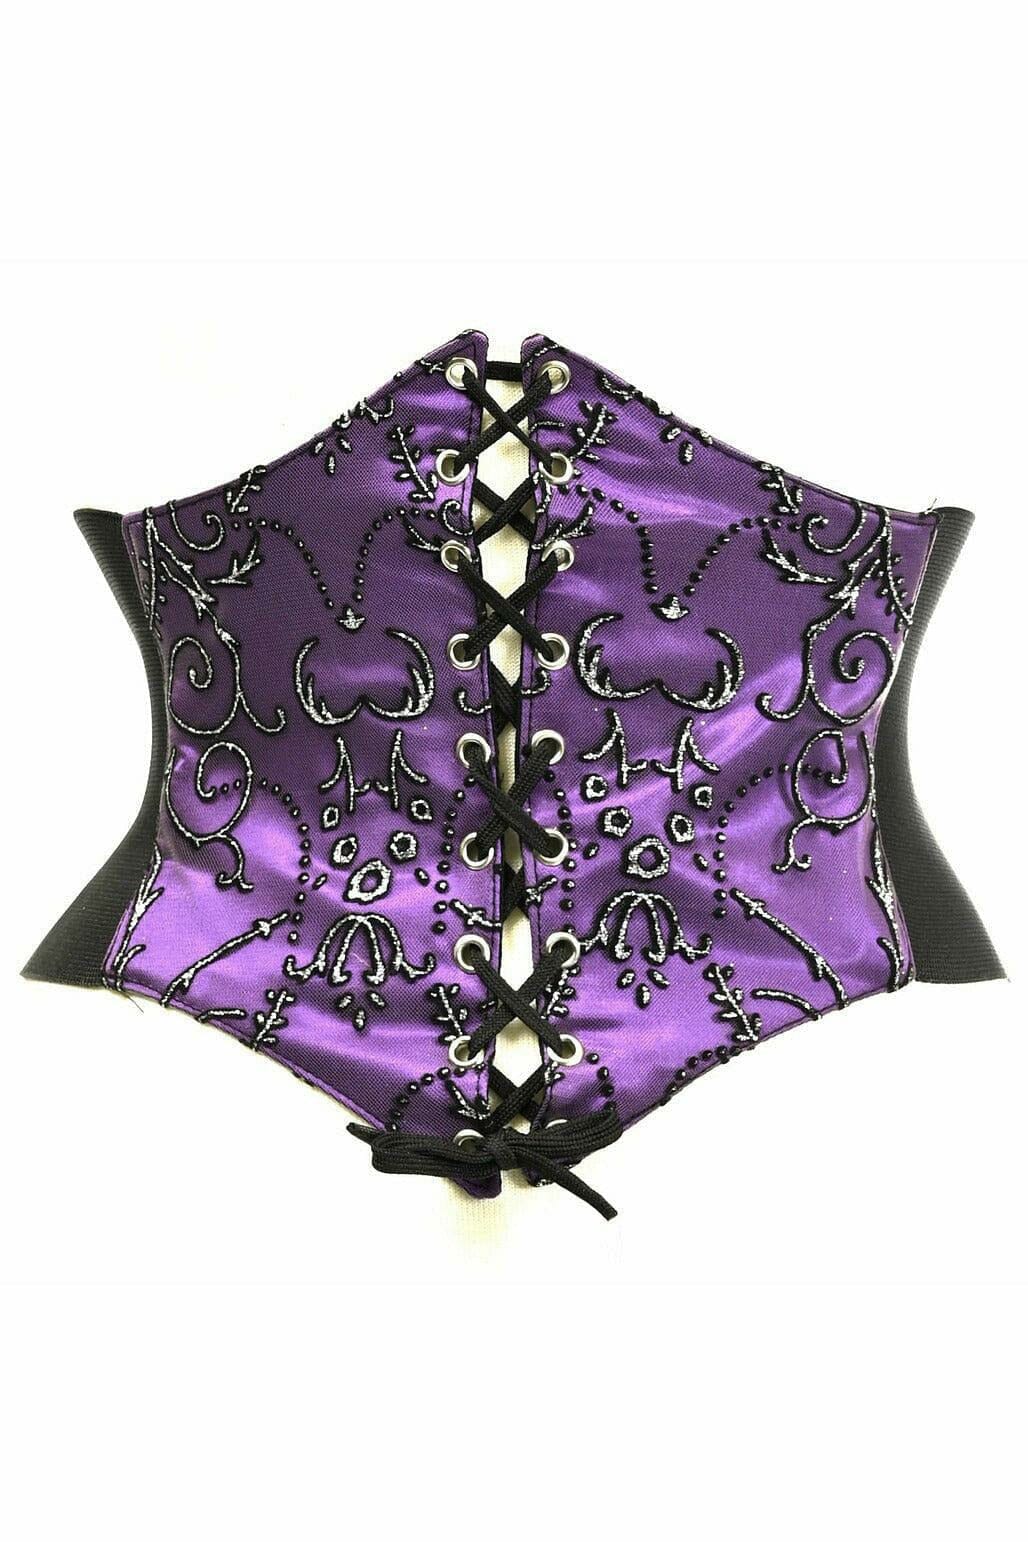 Lavish Purple Embroidered Corset Belt Cincher-Corset Belts-Daisy Corsets-Purple-S-SEXYSHOES.COM